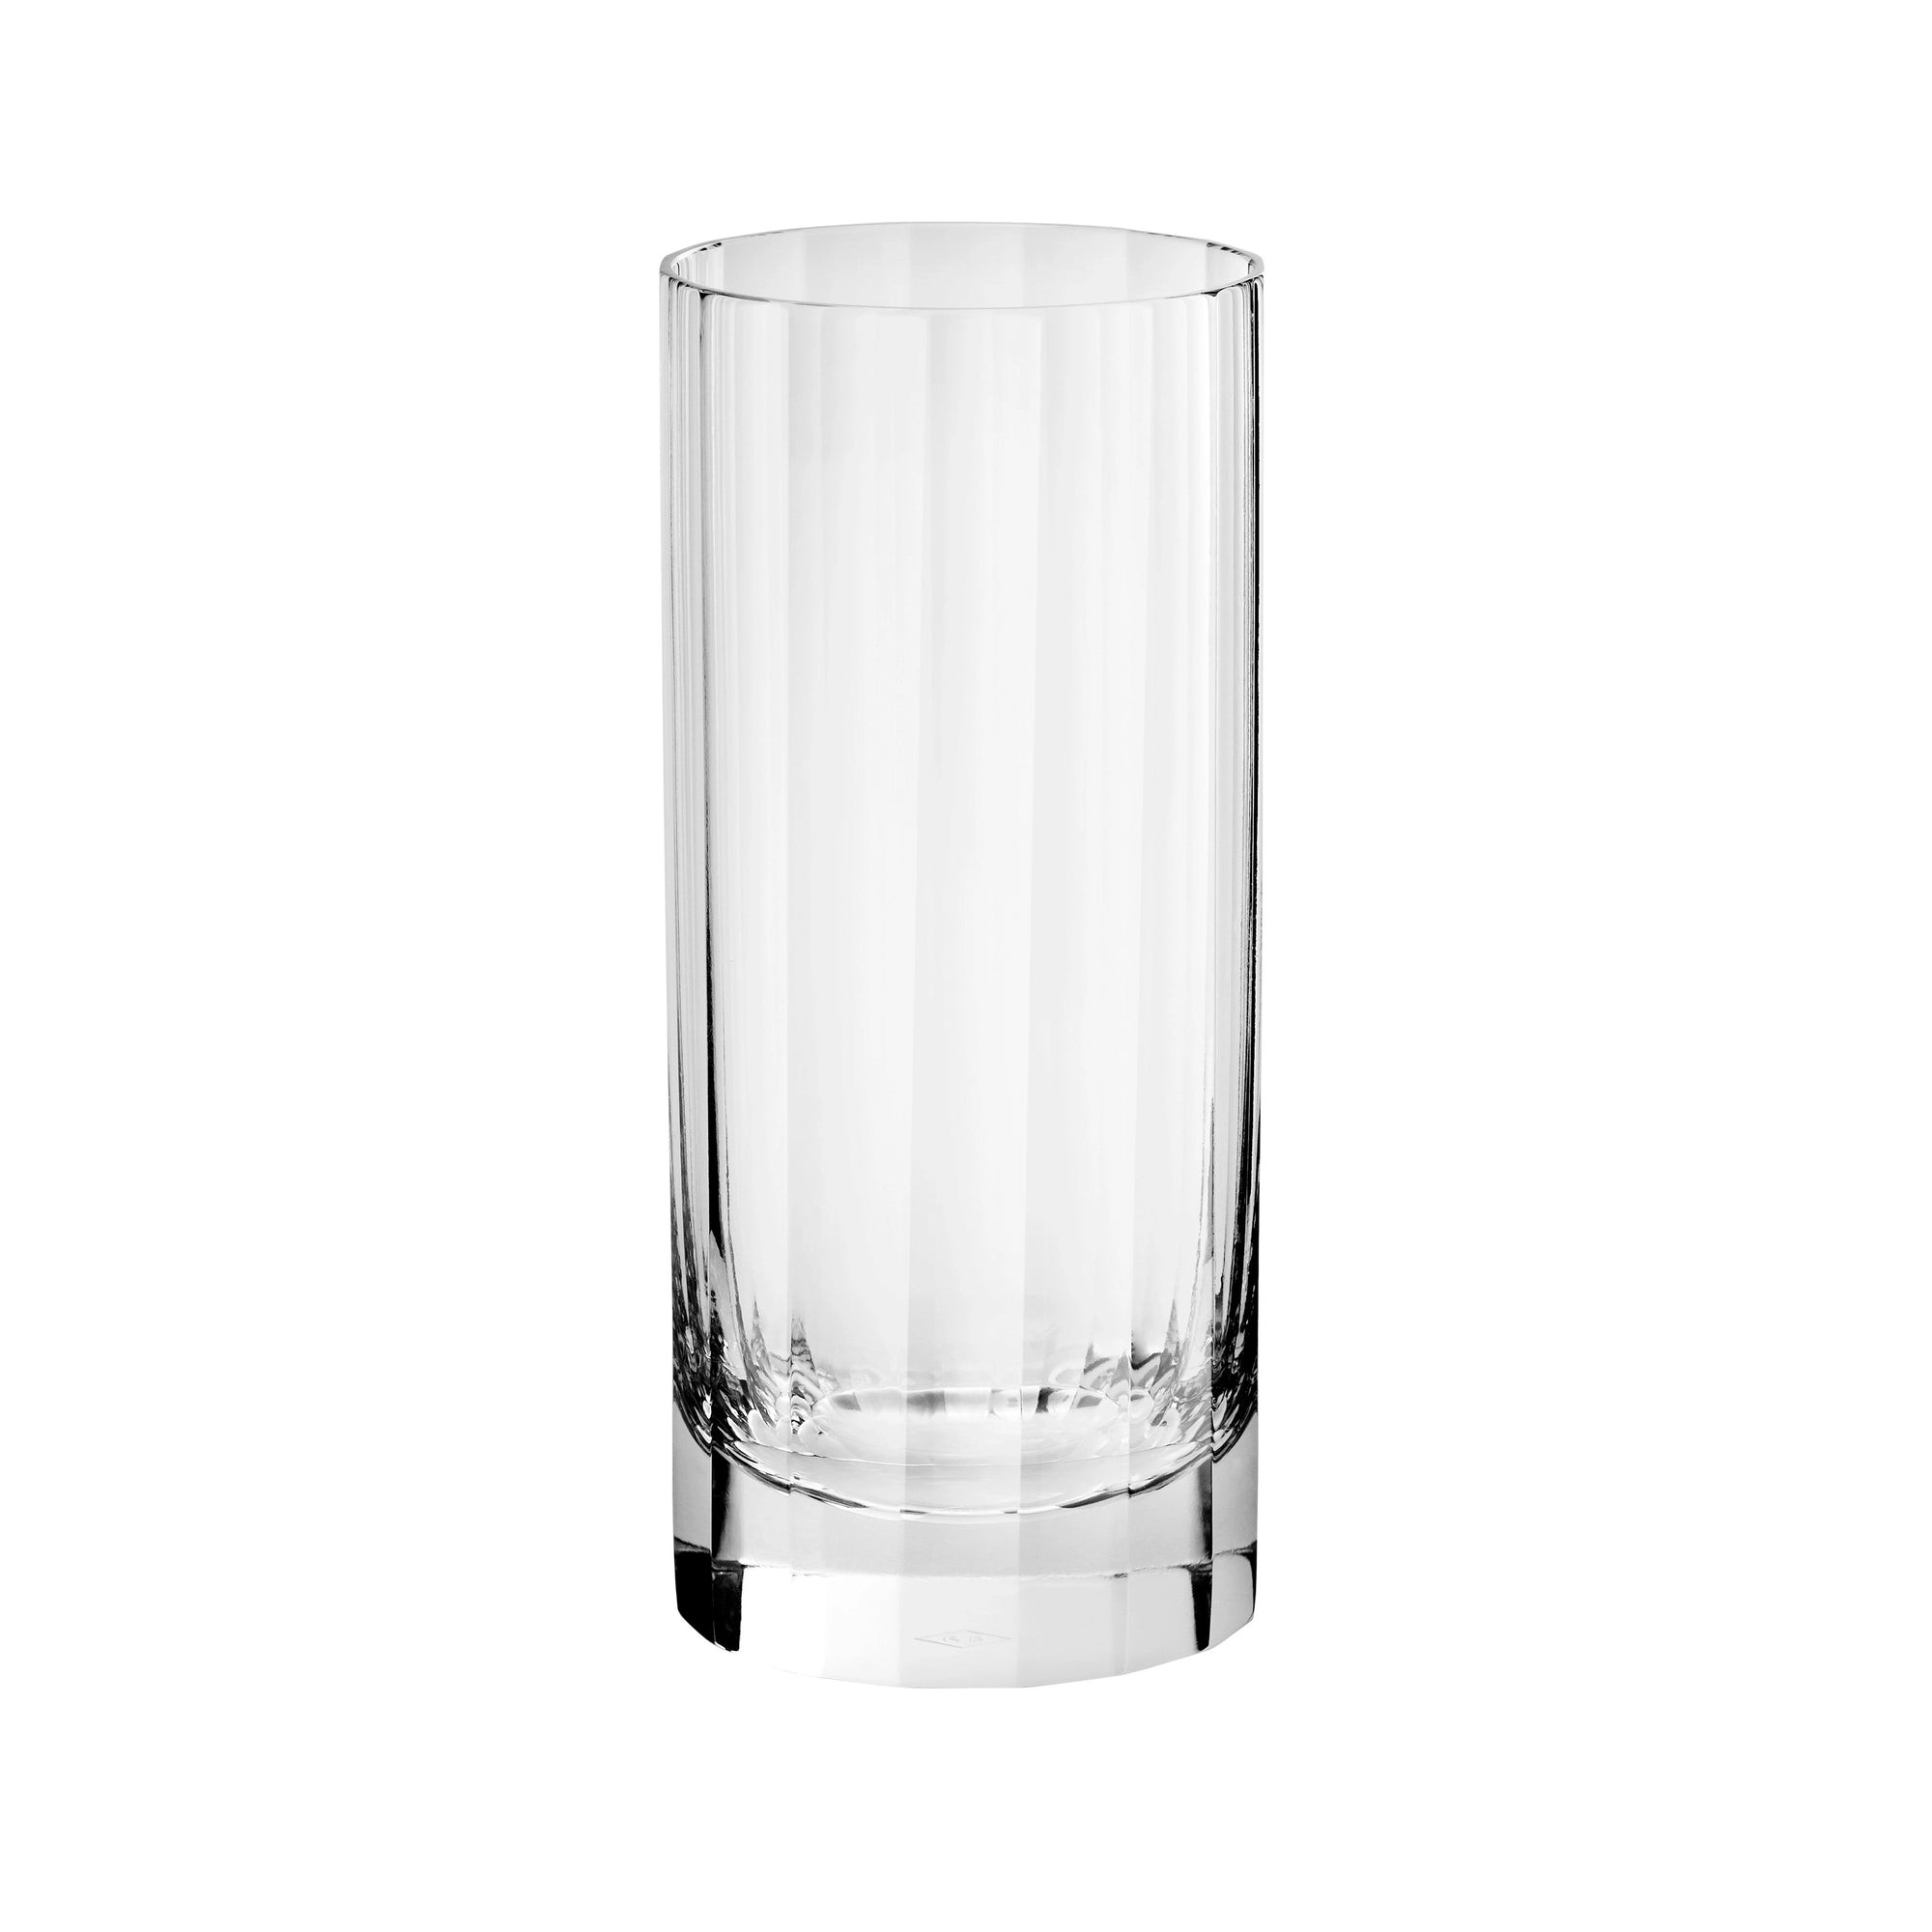 Adage highball glass